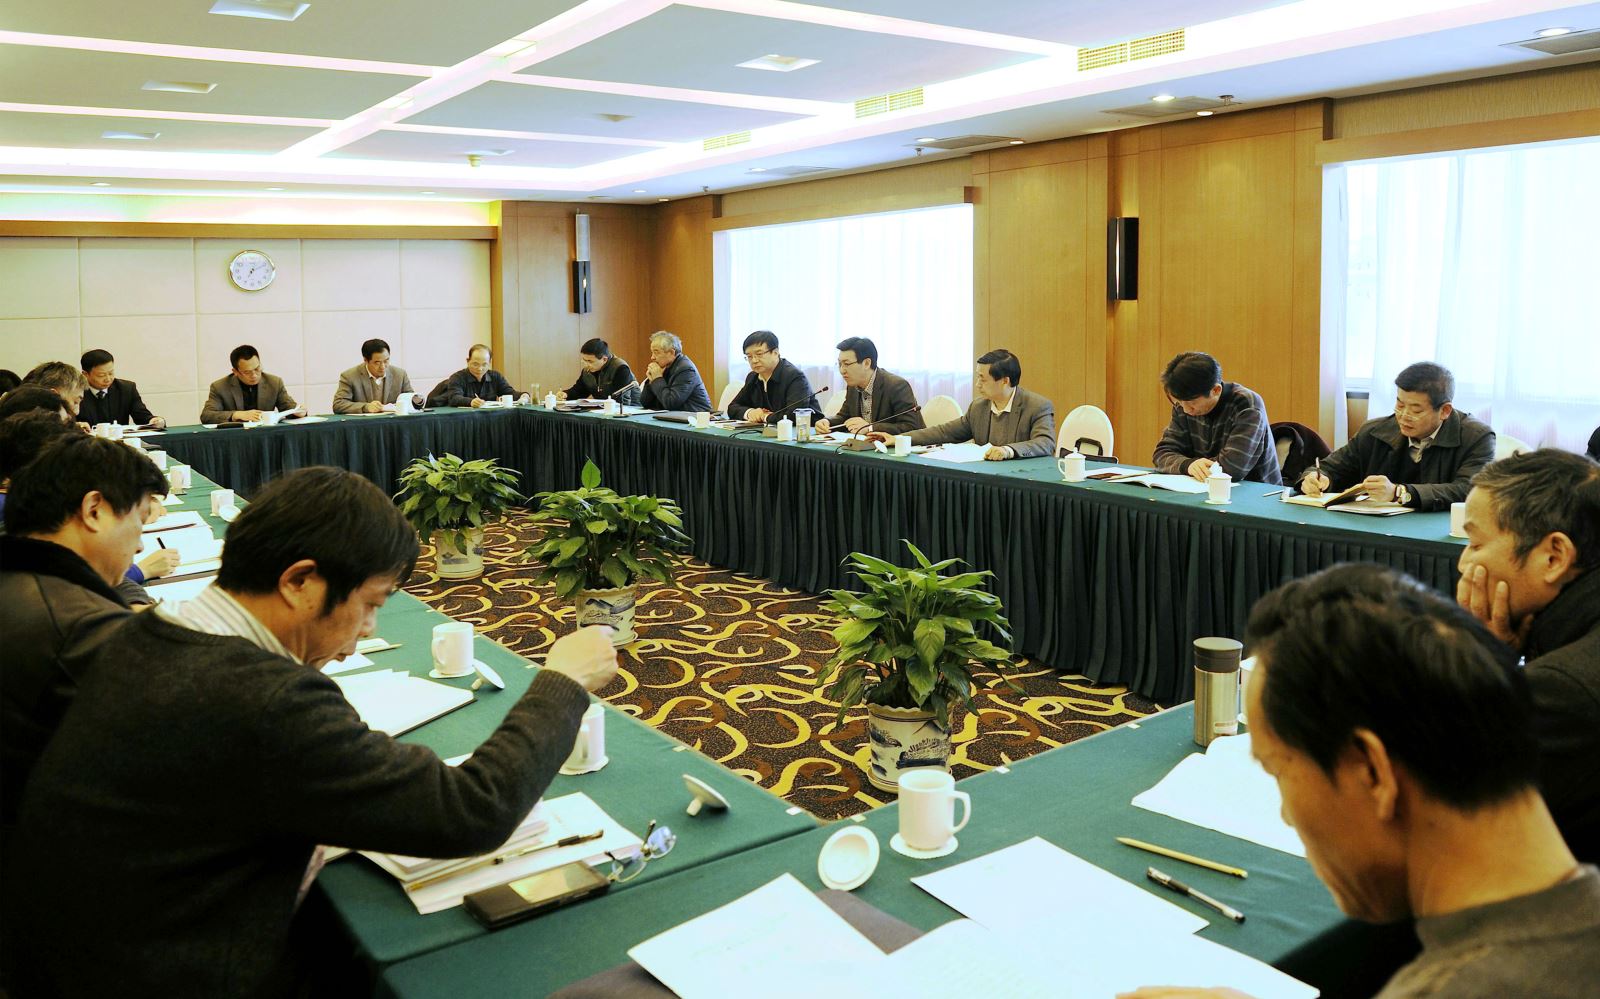 局2017年度工作會議在南京召開